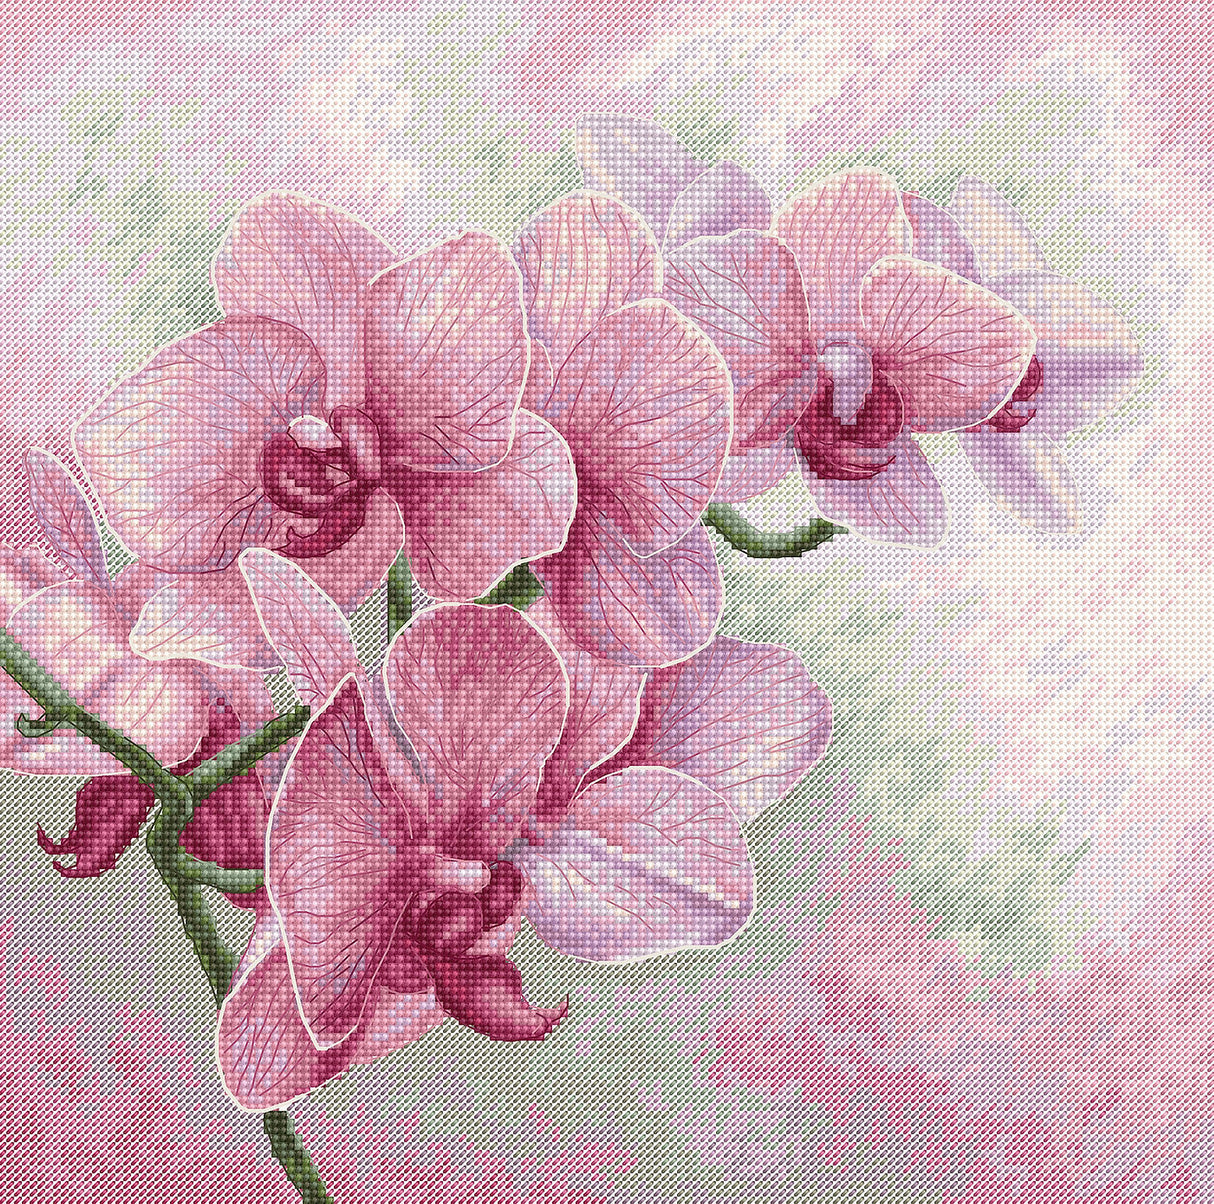 Orquídeas elegantes - B7009 Luca-S - Kit de Punto de Cruz